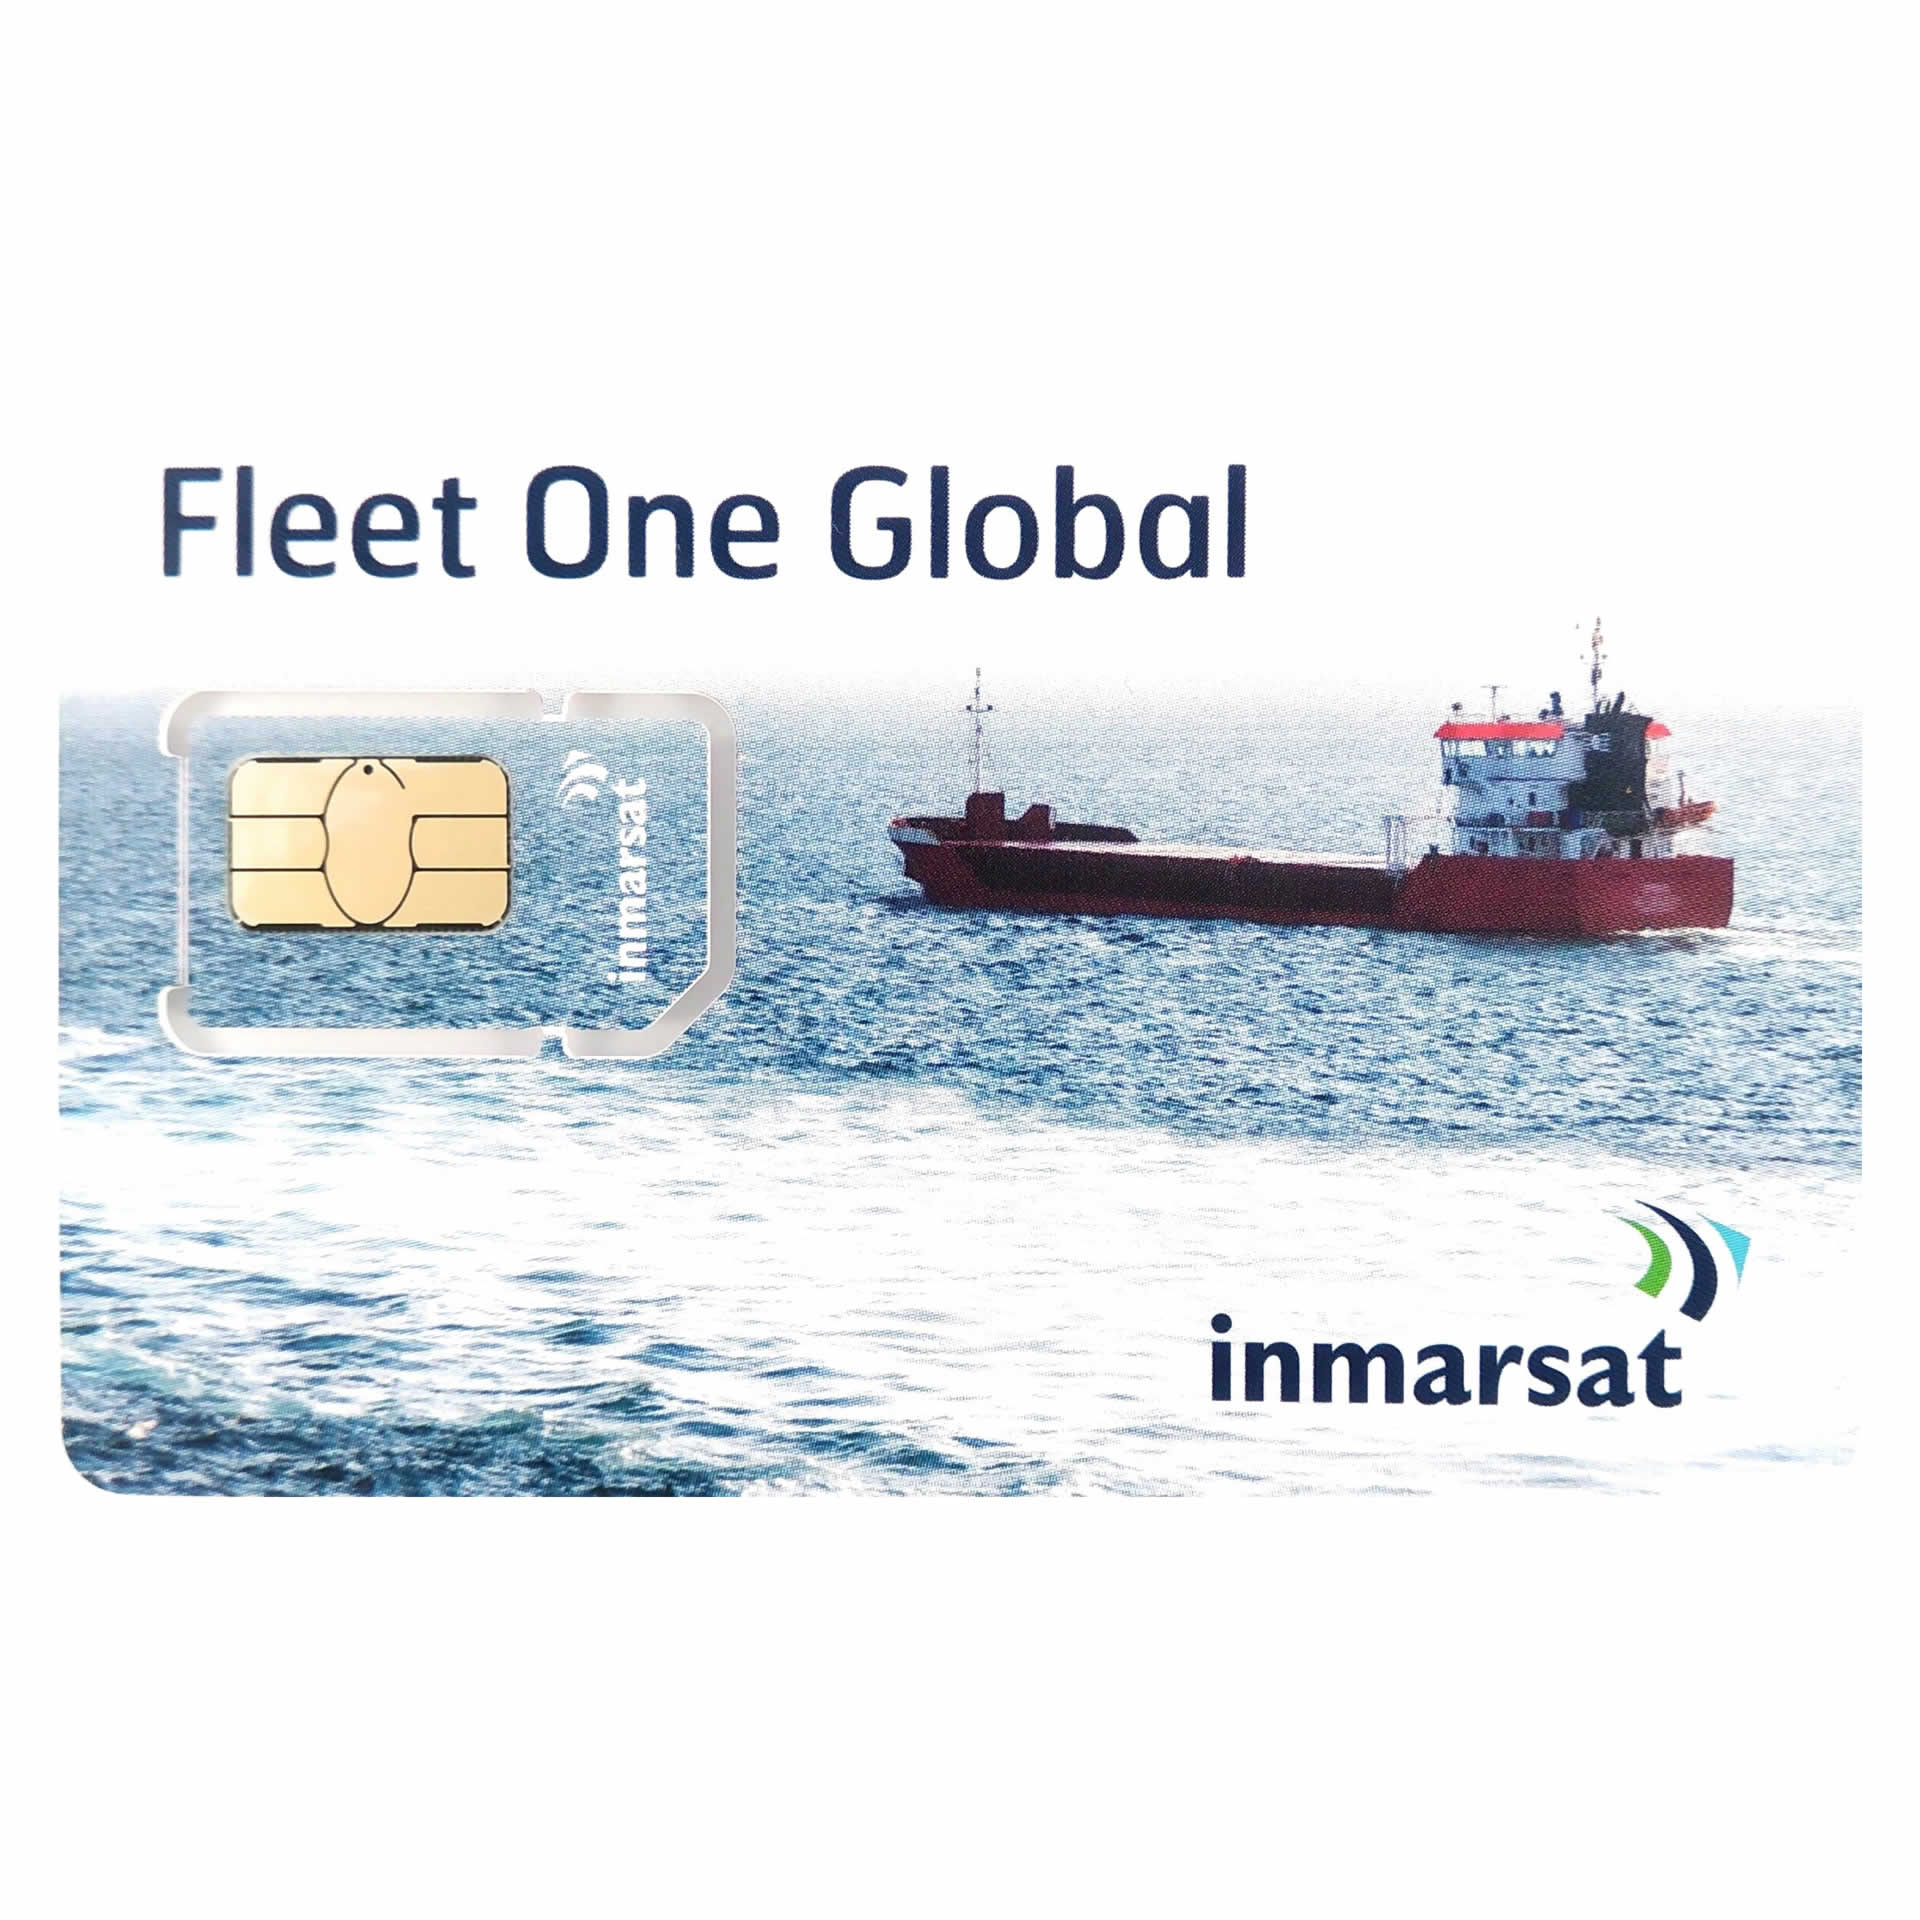 INMARSAT GLOBAL FLEET ONE Prepaid Reloadable Card - 250 UNITS - 30 DAYS